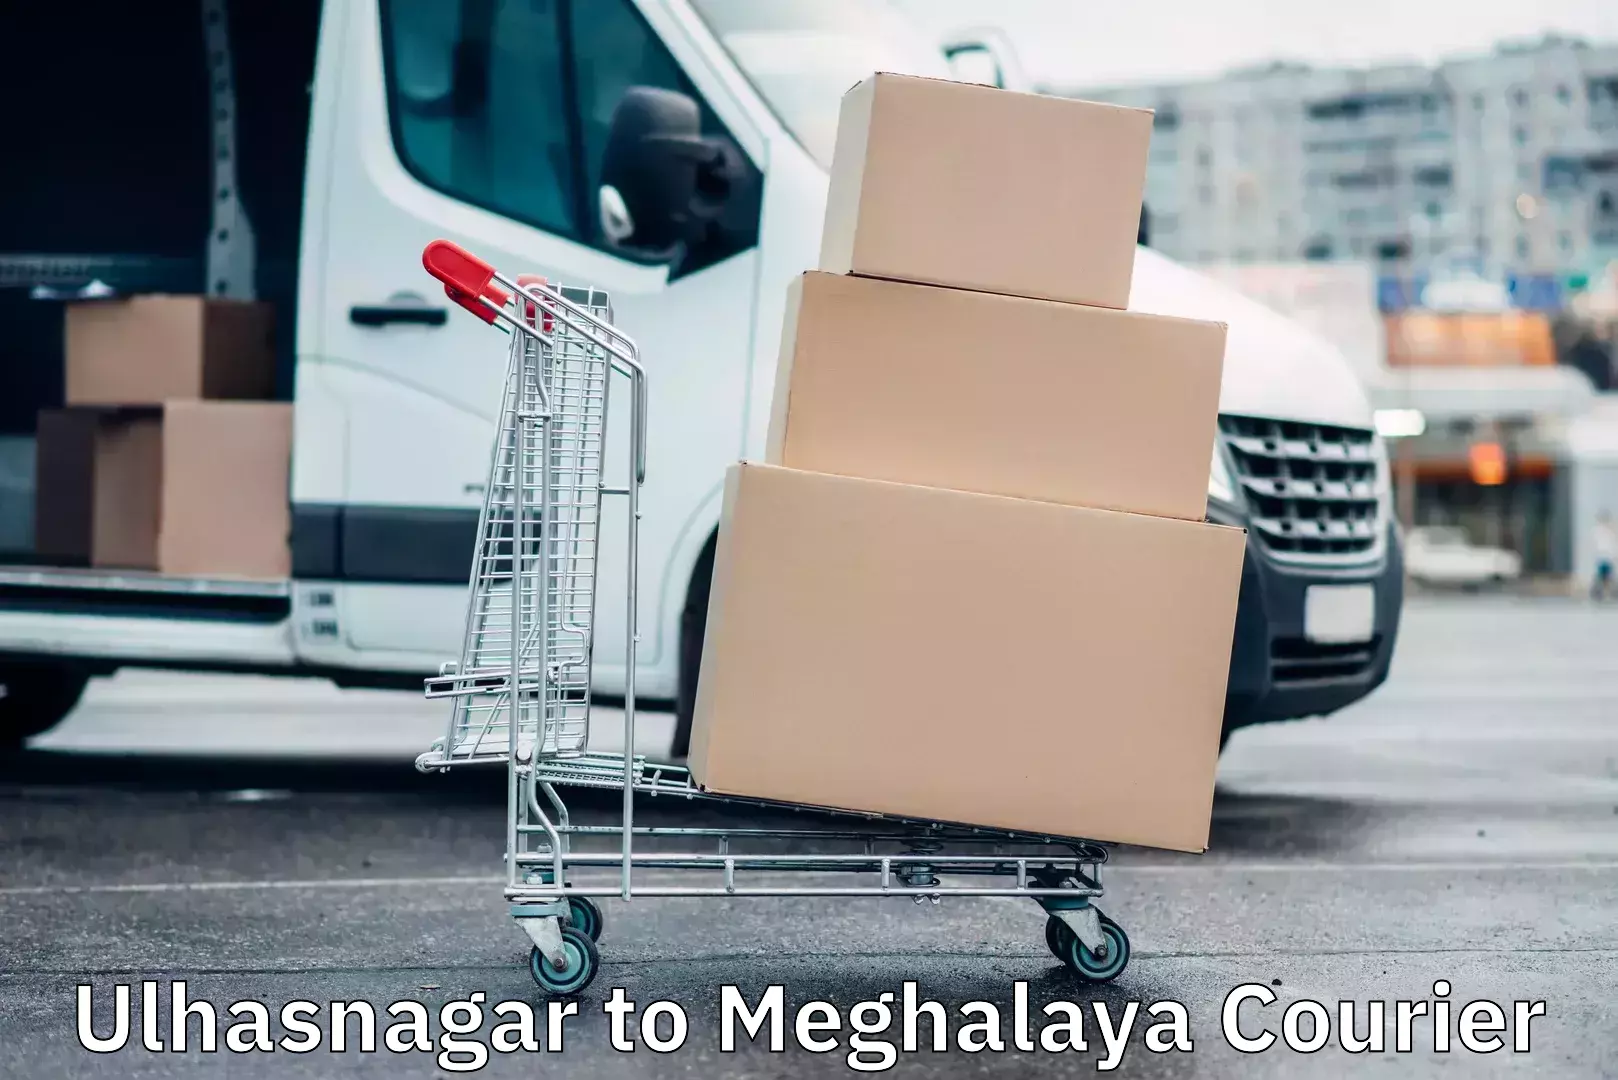 Quick booking process Ulhasnagar to Meghalaya